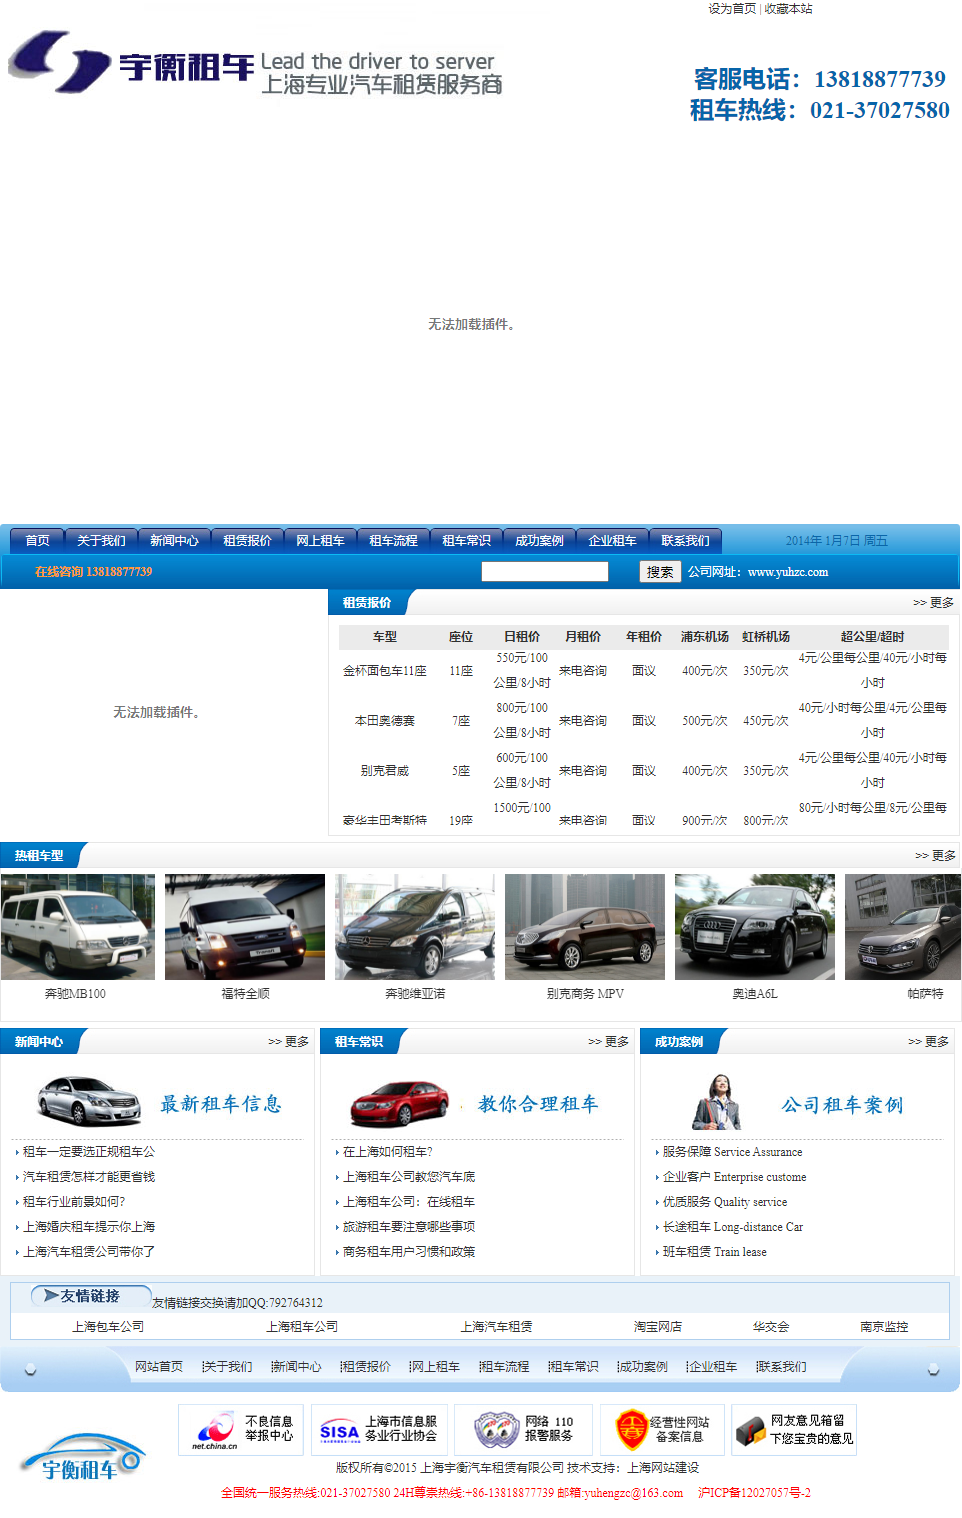 上海宇衡汽车租赁有限公司网站案例